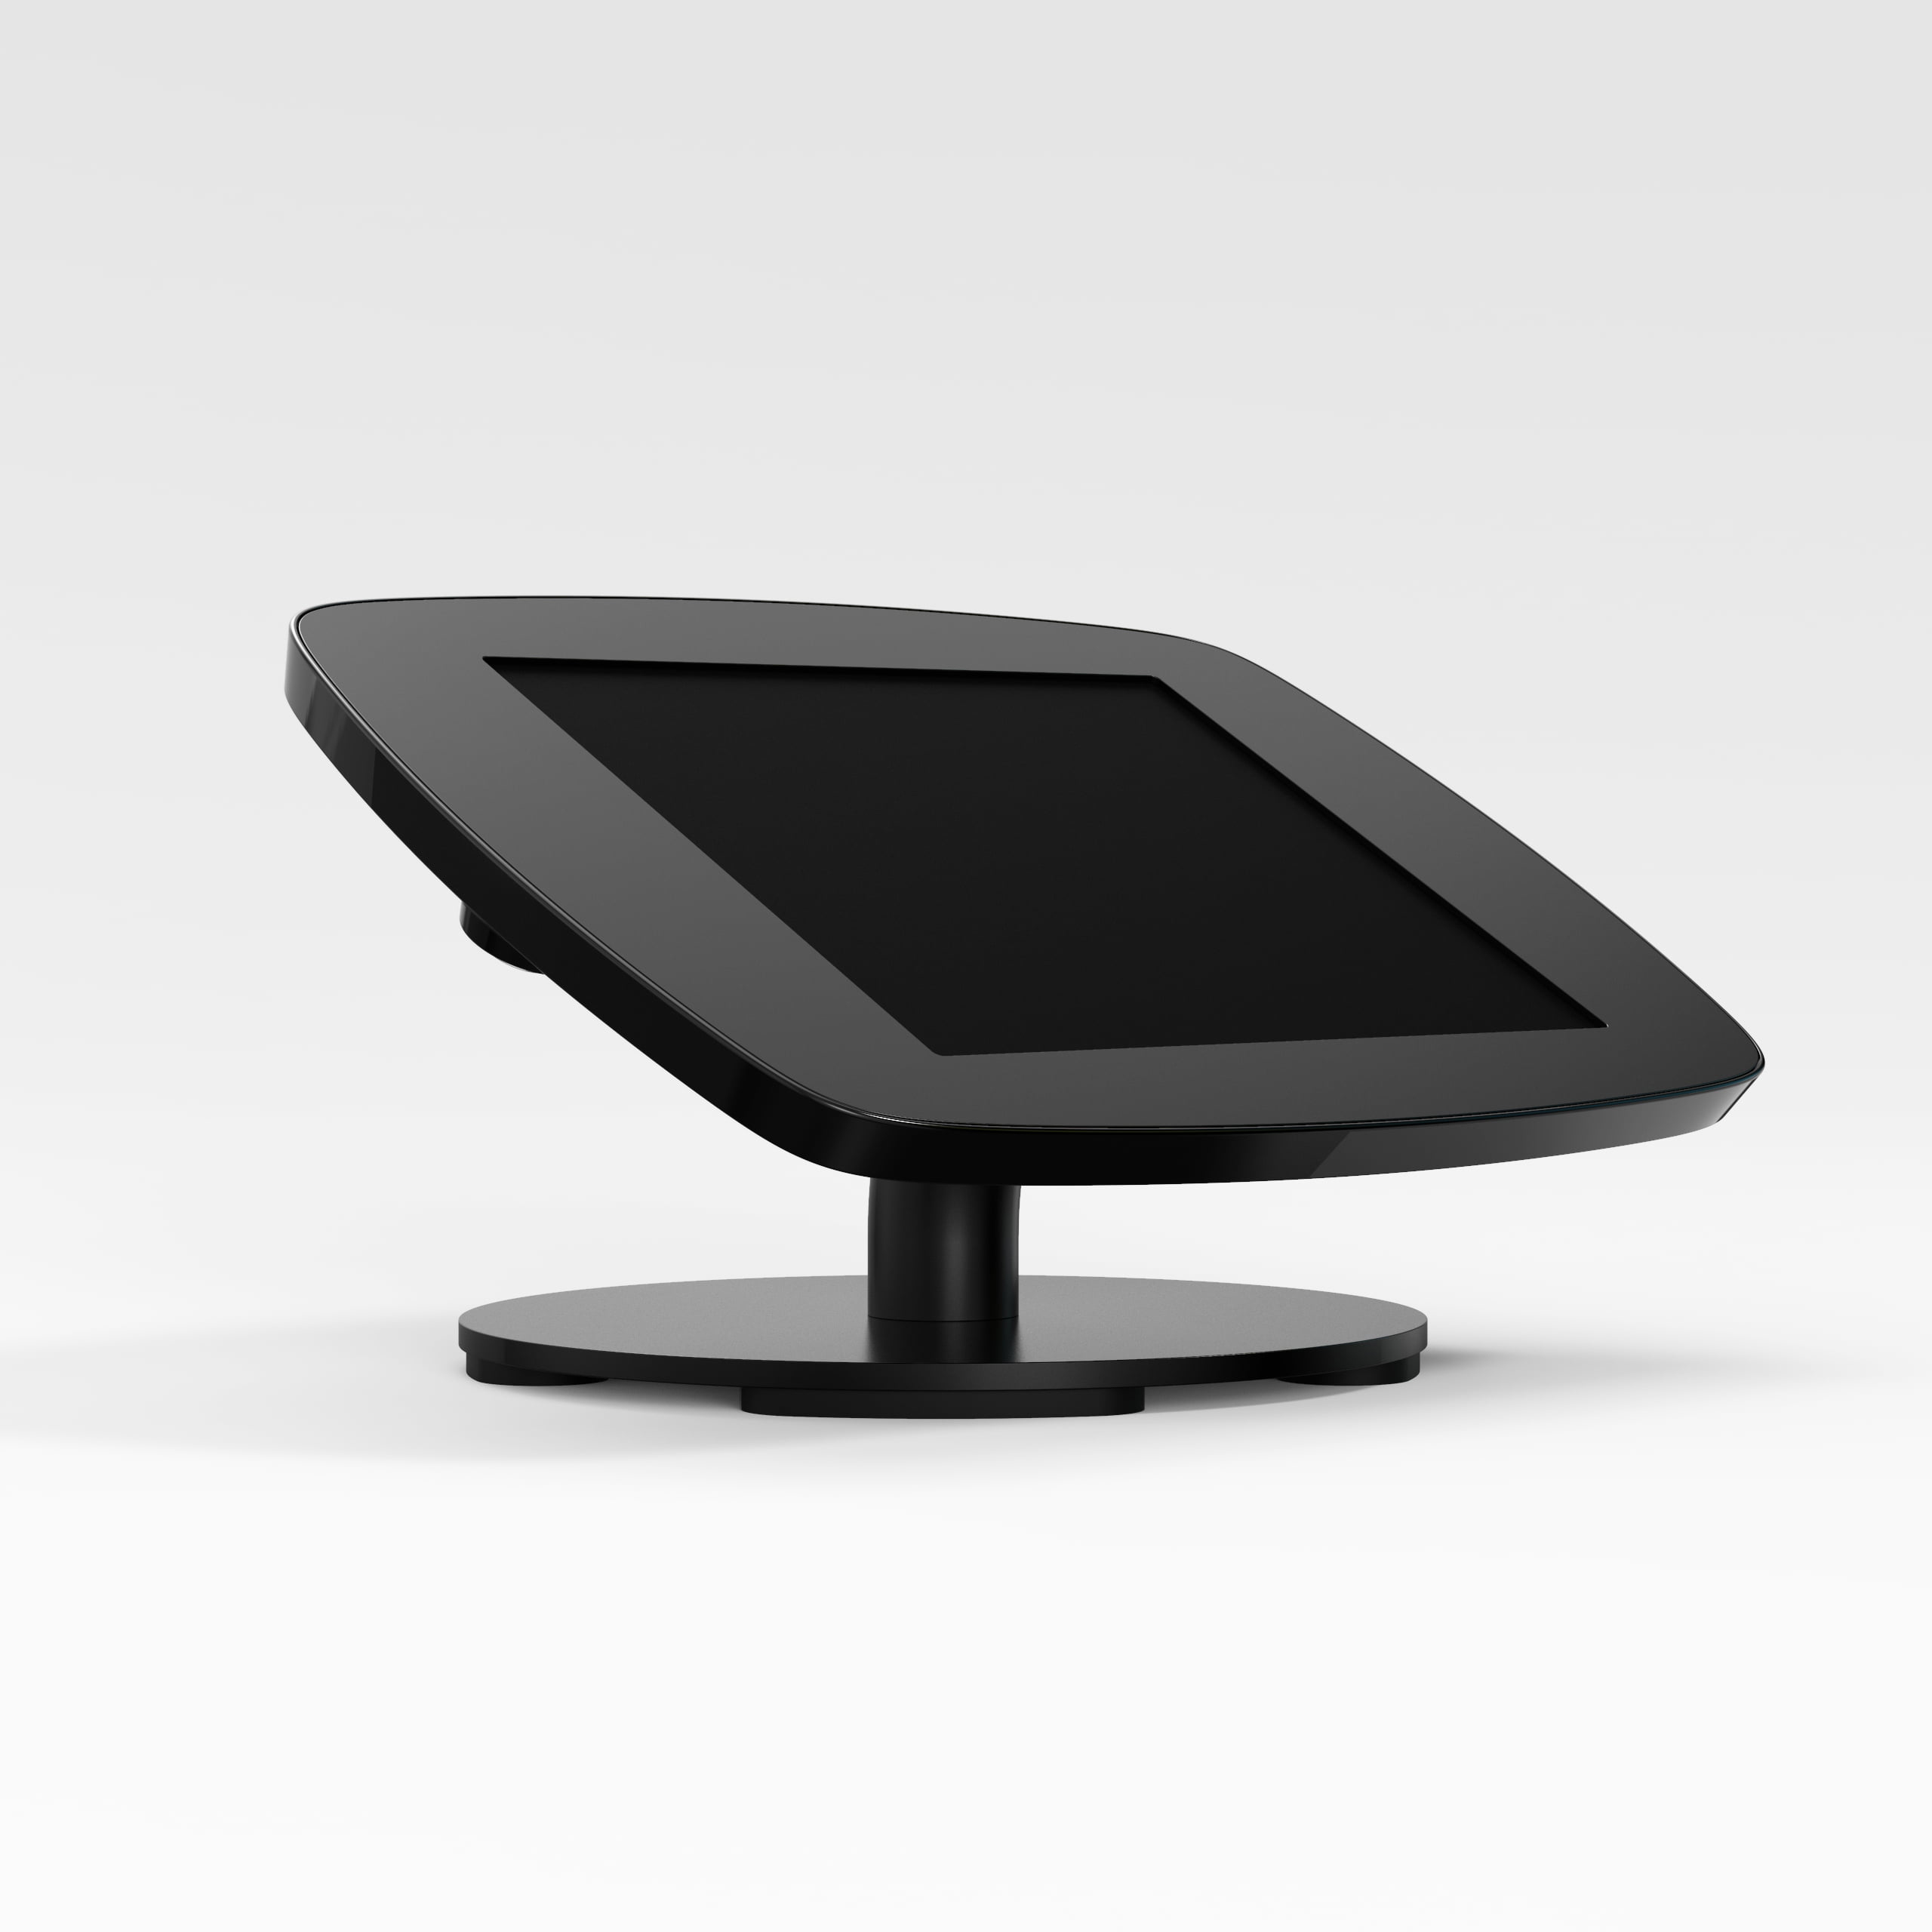 Bouncepad Counter supporto antifurto per tablet 25,4 cm [10] Nero (COUNTDBLKCLOSEDCAM/CLOSEDHOME SG)